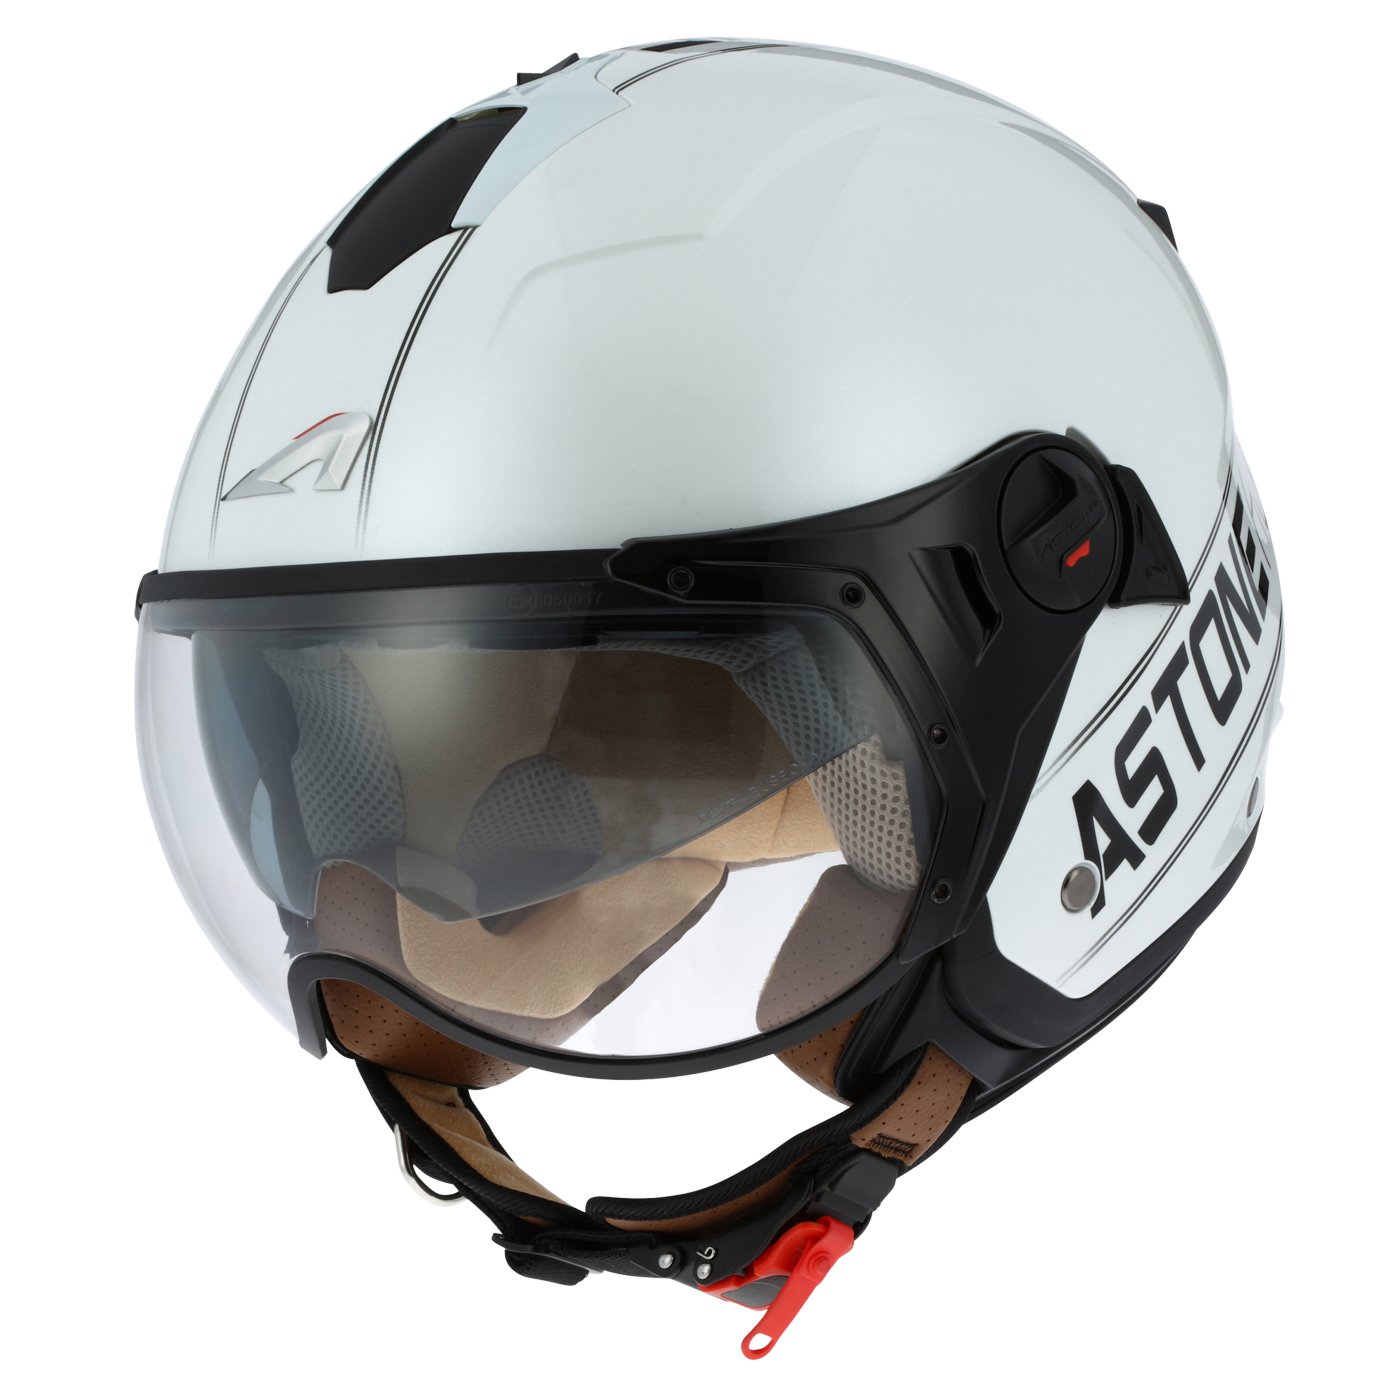 Astone Helmets - MINIJET S SPORT COOPER graphic - Casque jet compact - Casque de moto look sport - Casque de scooter mixte - Casque en polycarbonate - white/black XS von Astone Helmets